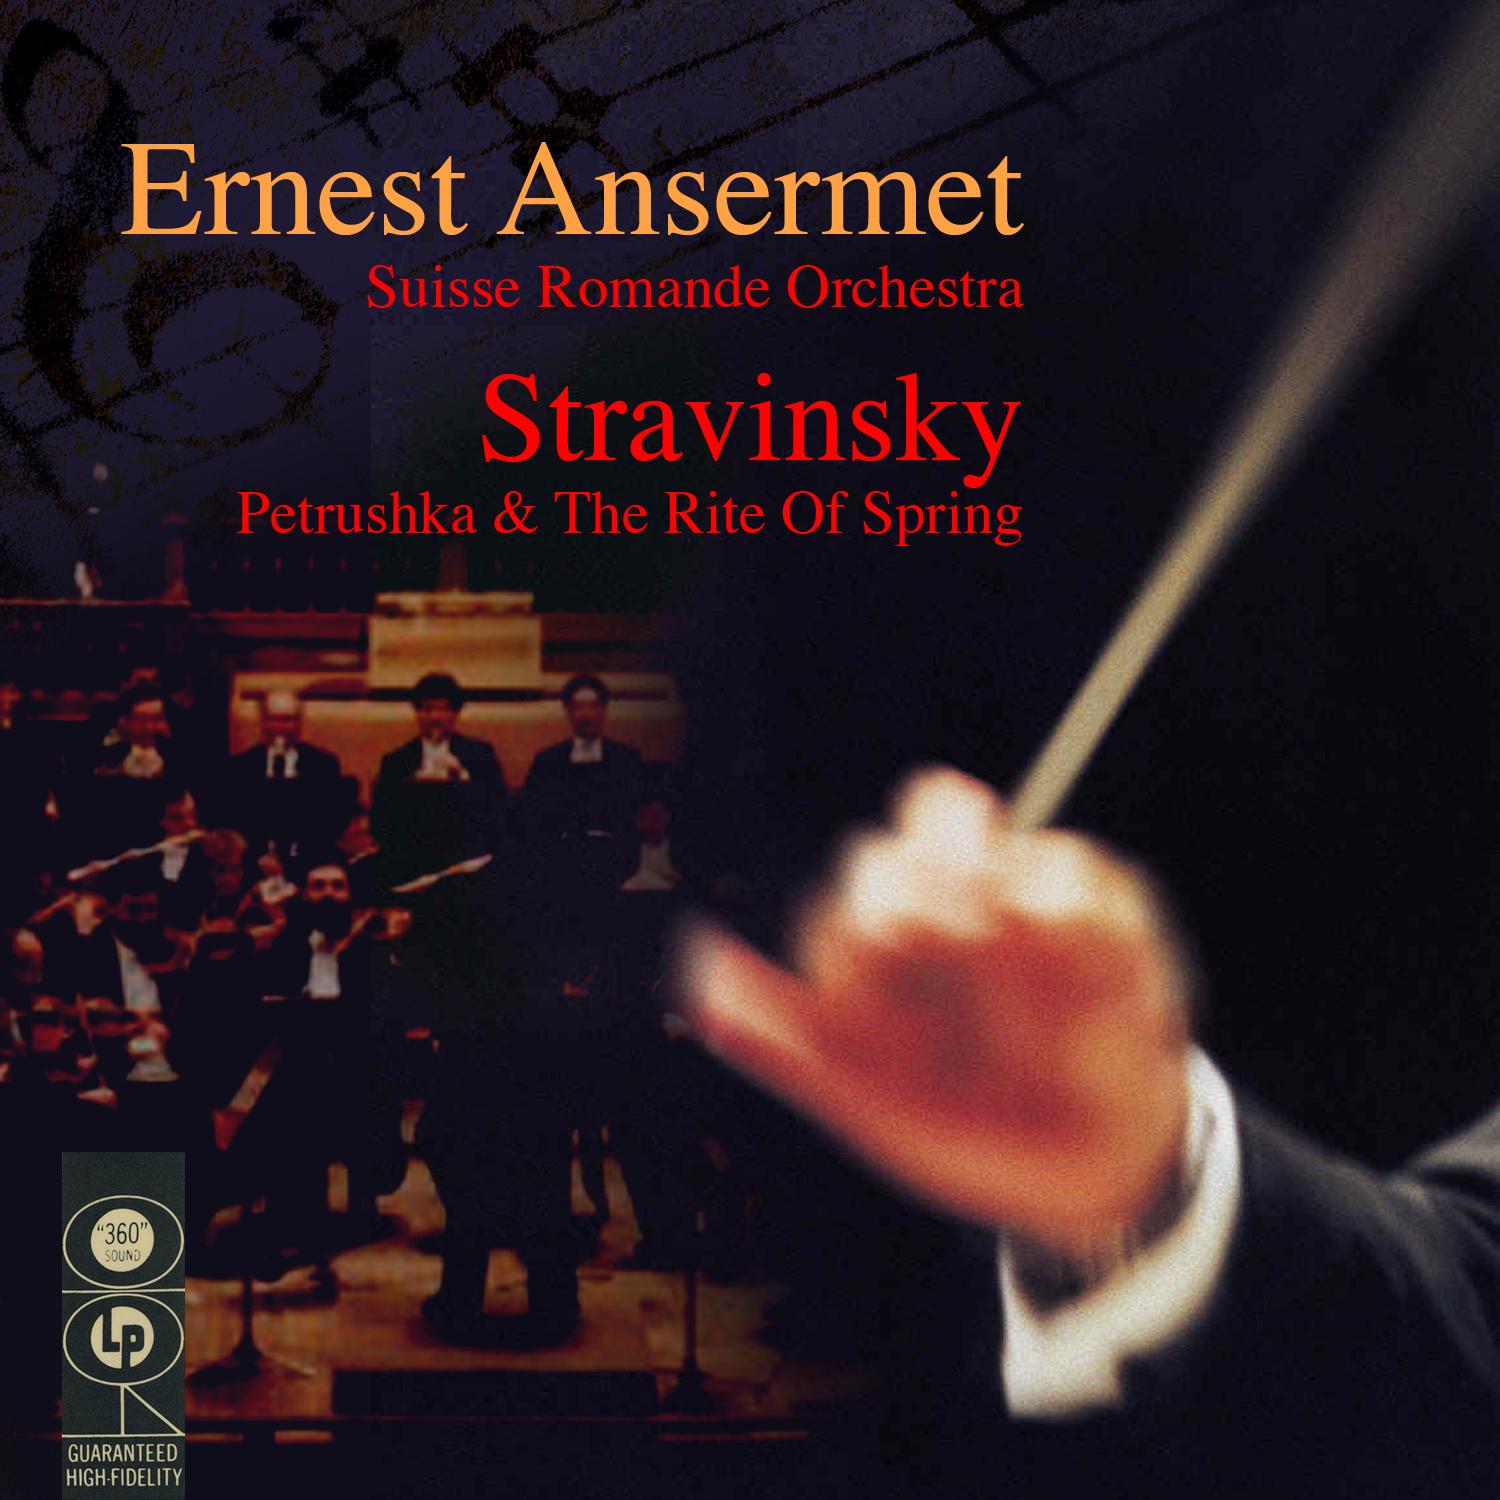 Stravinsky: Petrushka & The Rite Of Spring